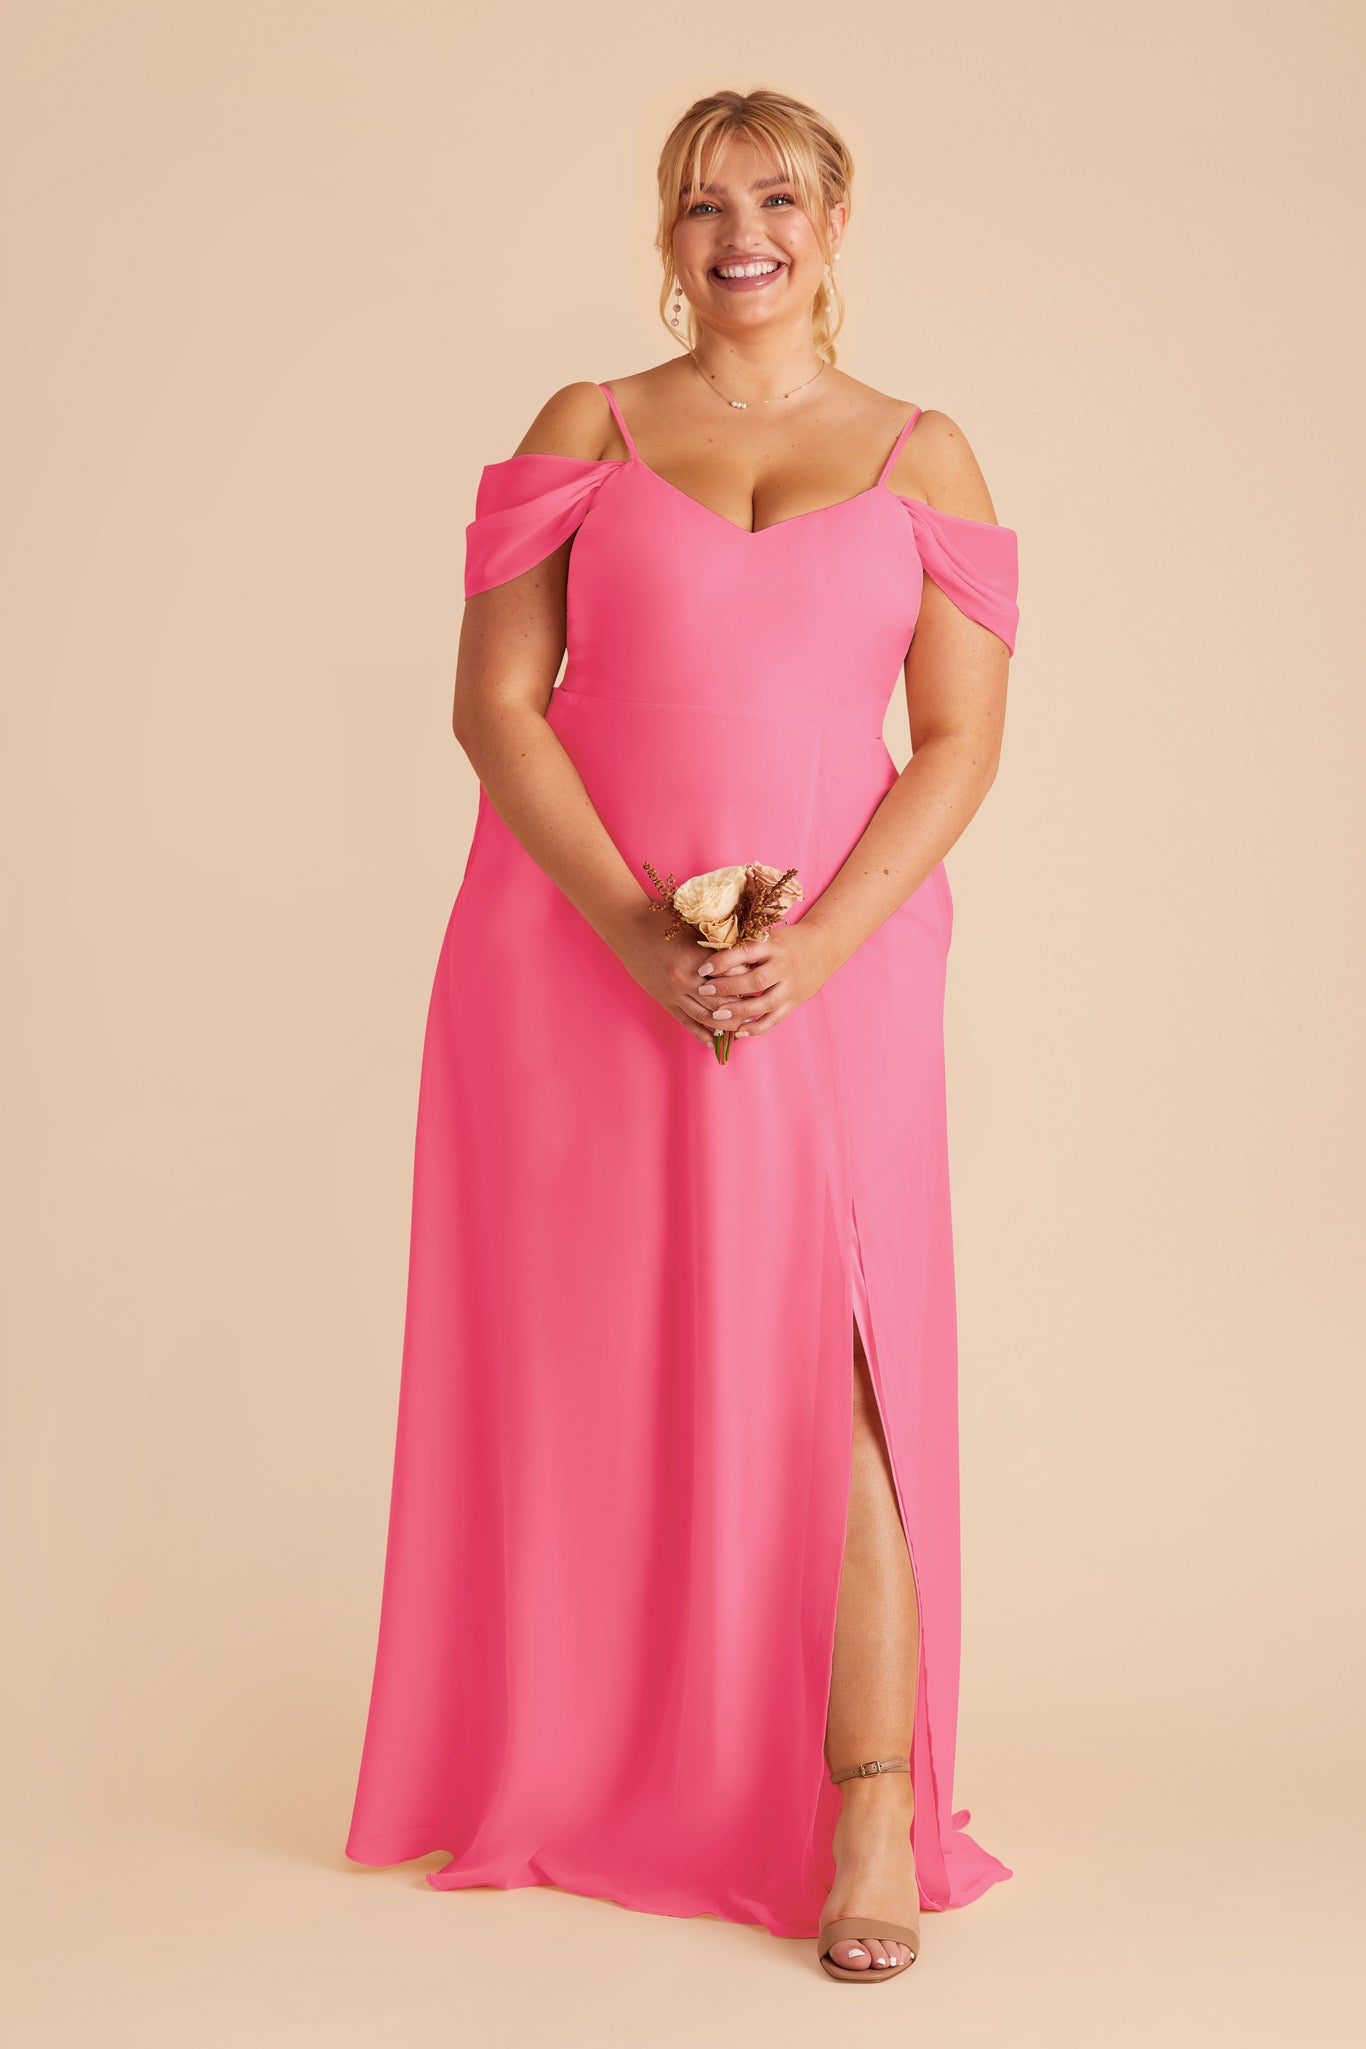 Bon Bon Pink Devin Convertible Dress by Birdy Grey